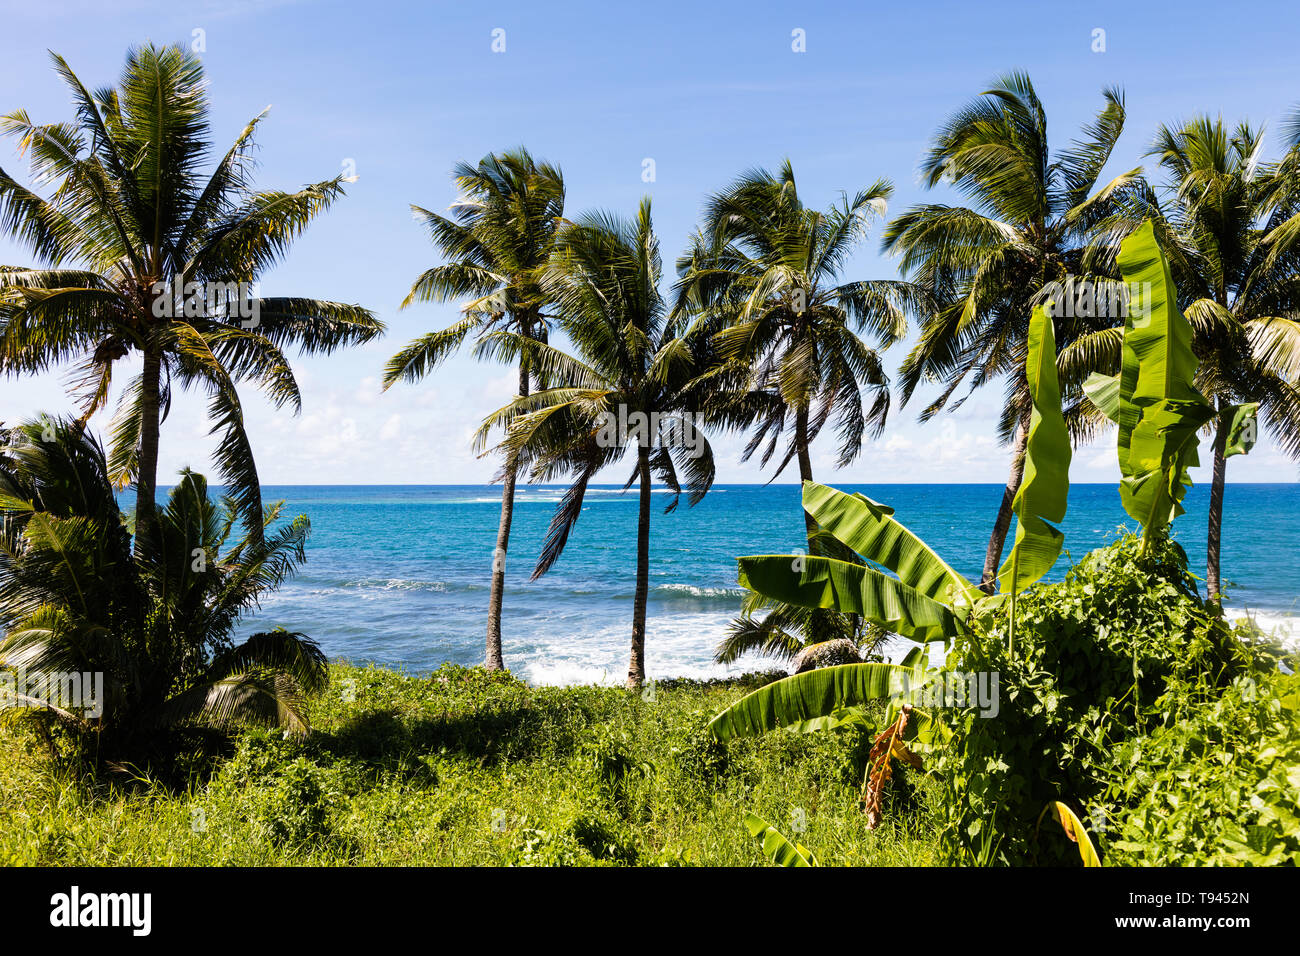 Vista paisaje tropical en la playa en la Polinesia con cocoteros, arena blanca perfecta, en primer plano, el océano, con aguas color turquesa y cielo azul profundo w Foto de stock